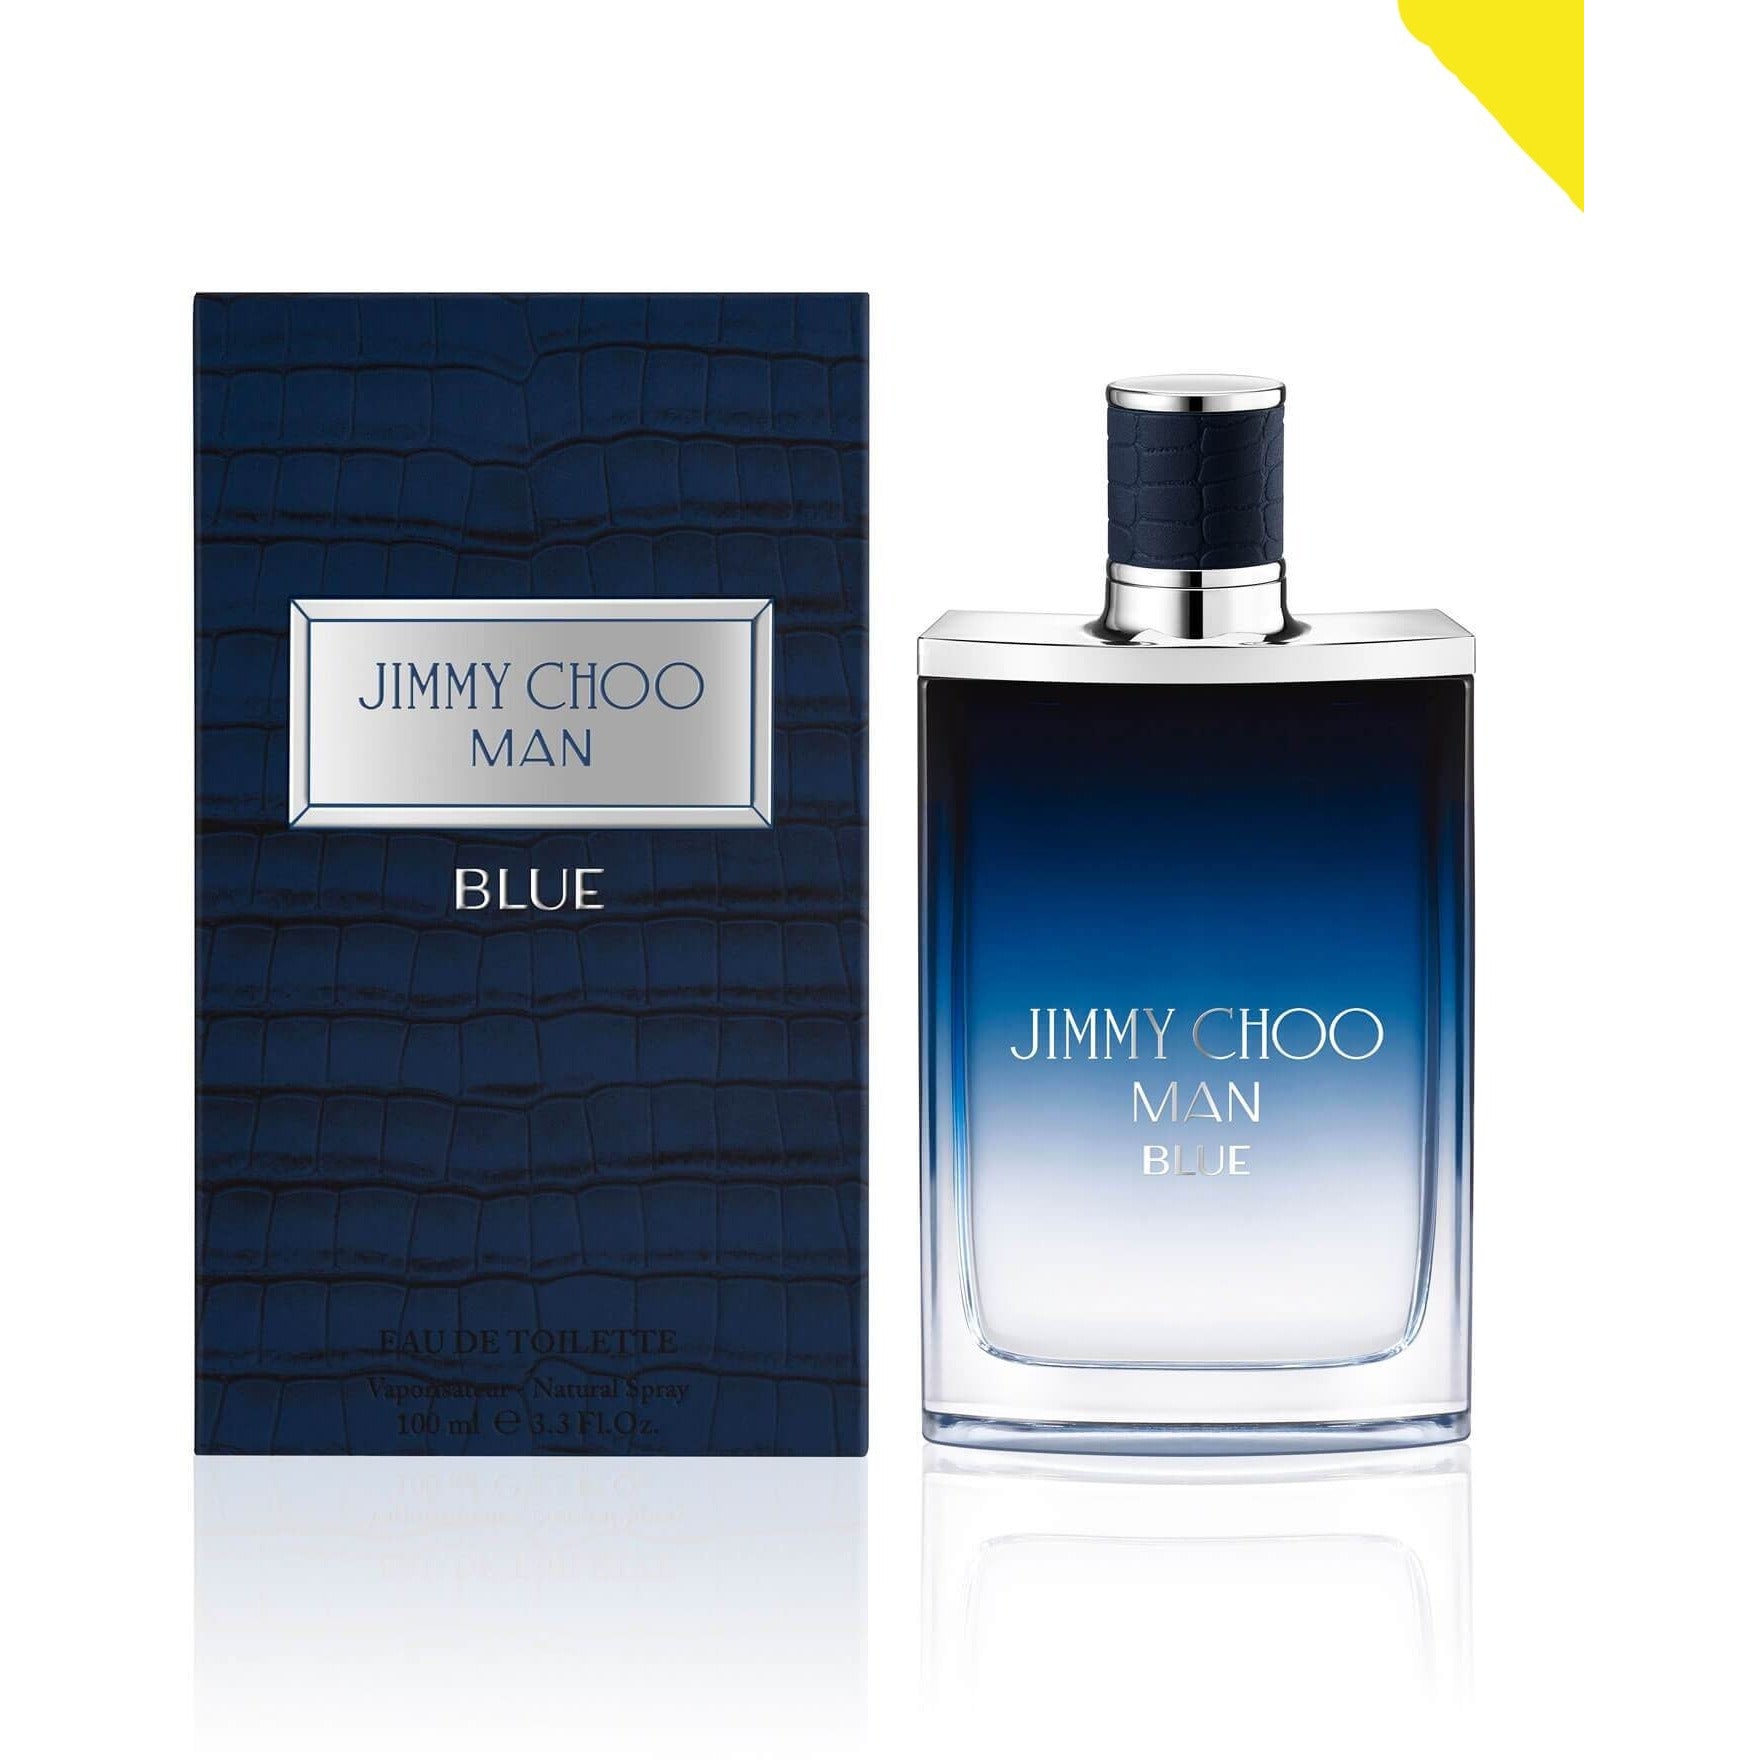 Jimmy Choo Man Blue precios